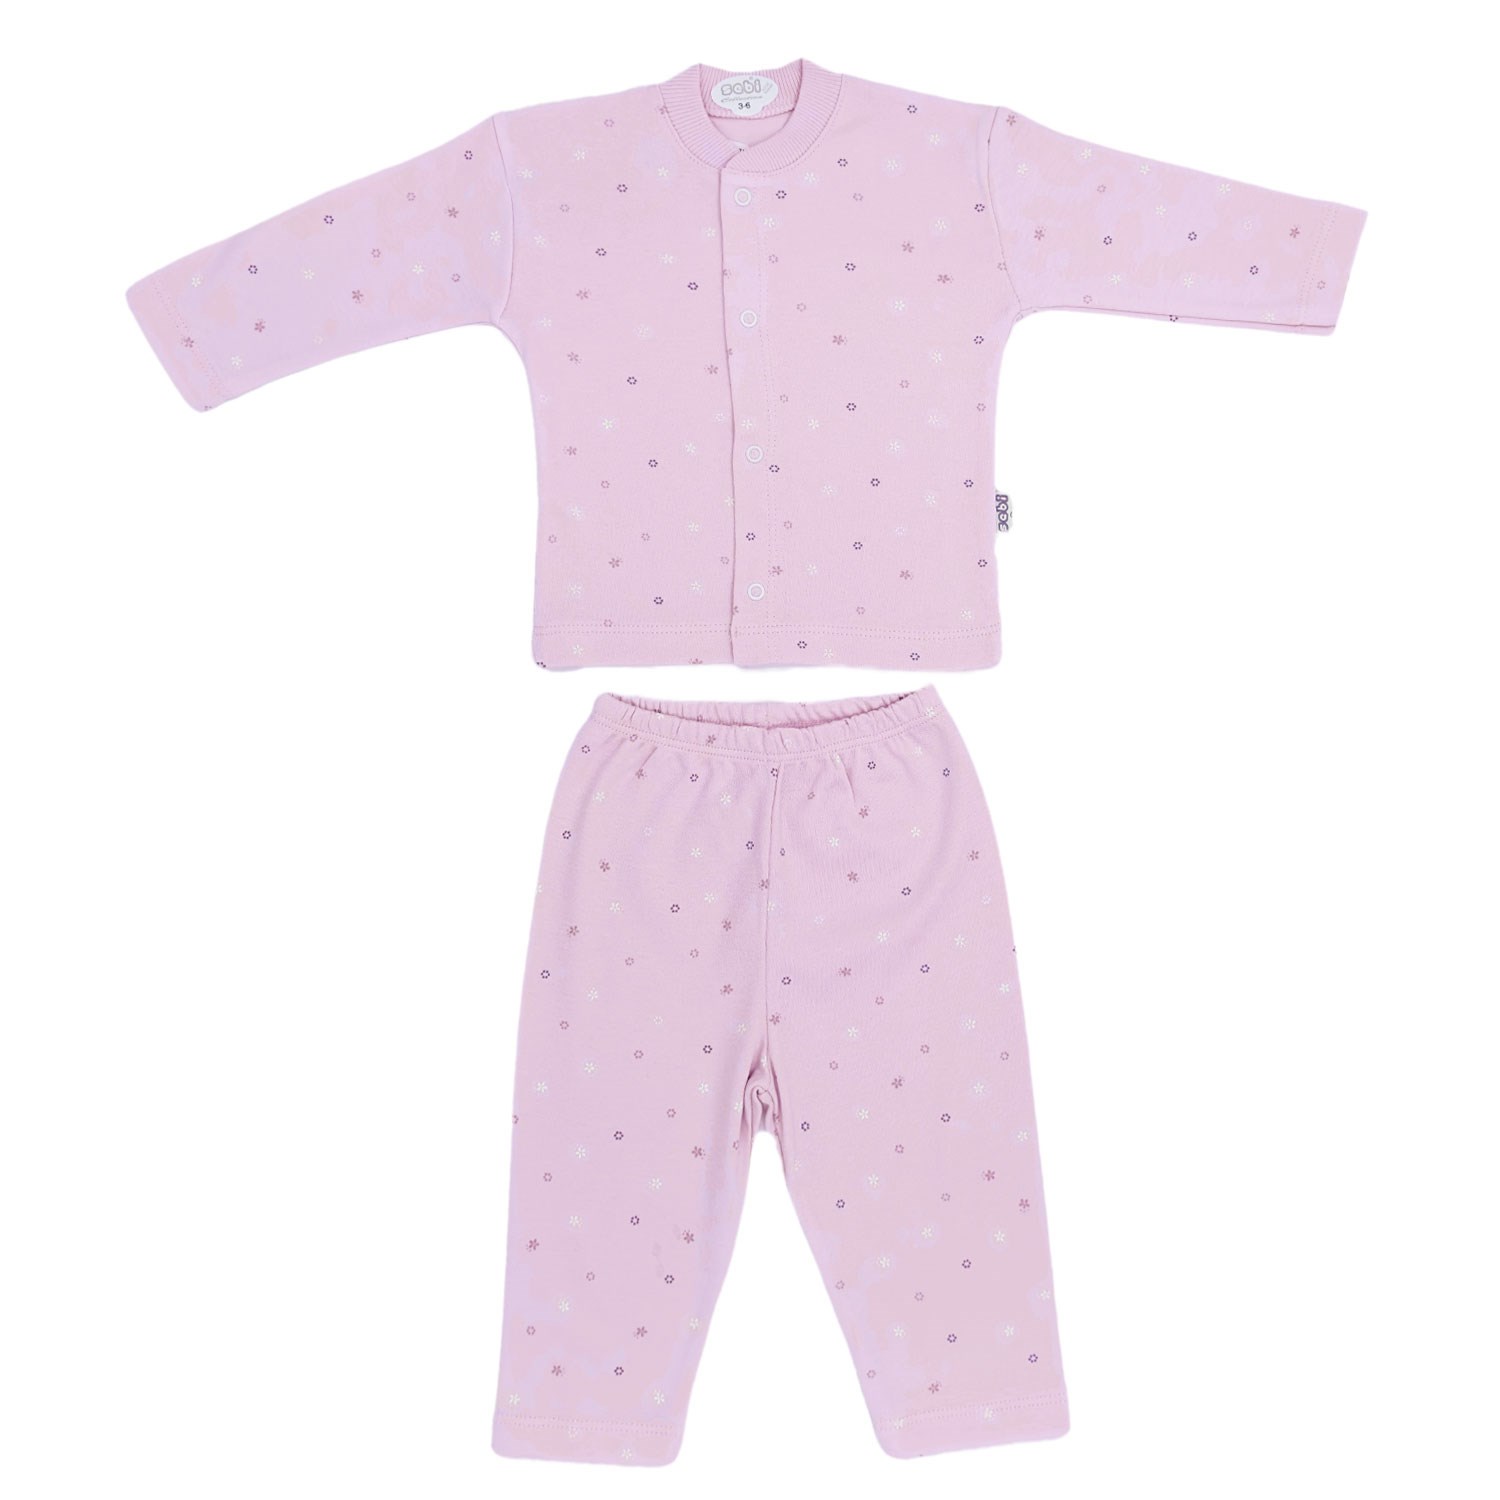 Sebi Bebe Ay Yıldız Baskılı Bebek Pijama Takımı 2331 Pembe